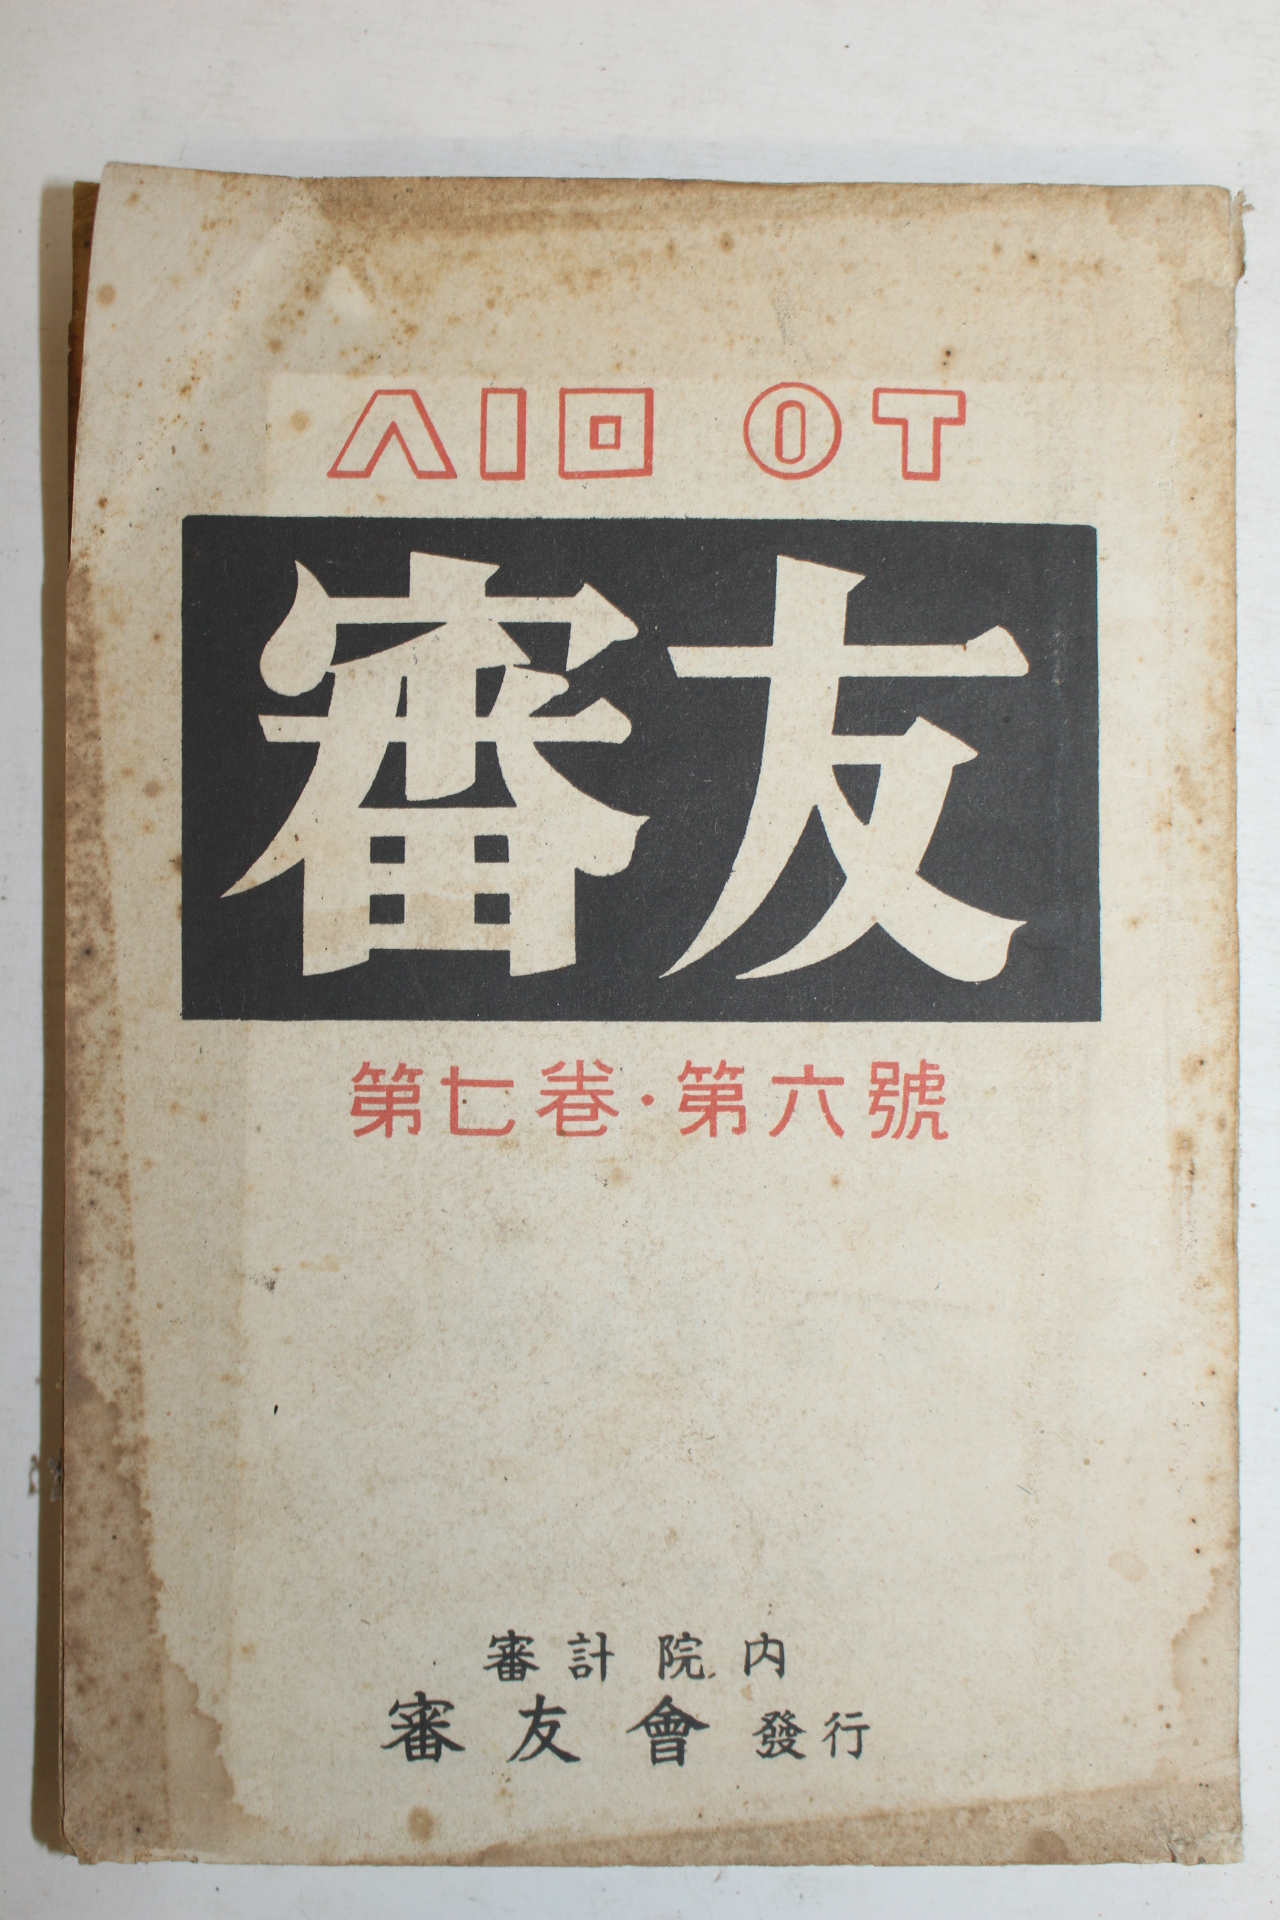 1960년 심우(審友) 제7권 제6호